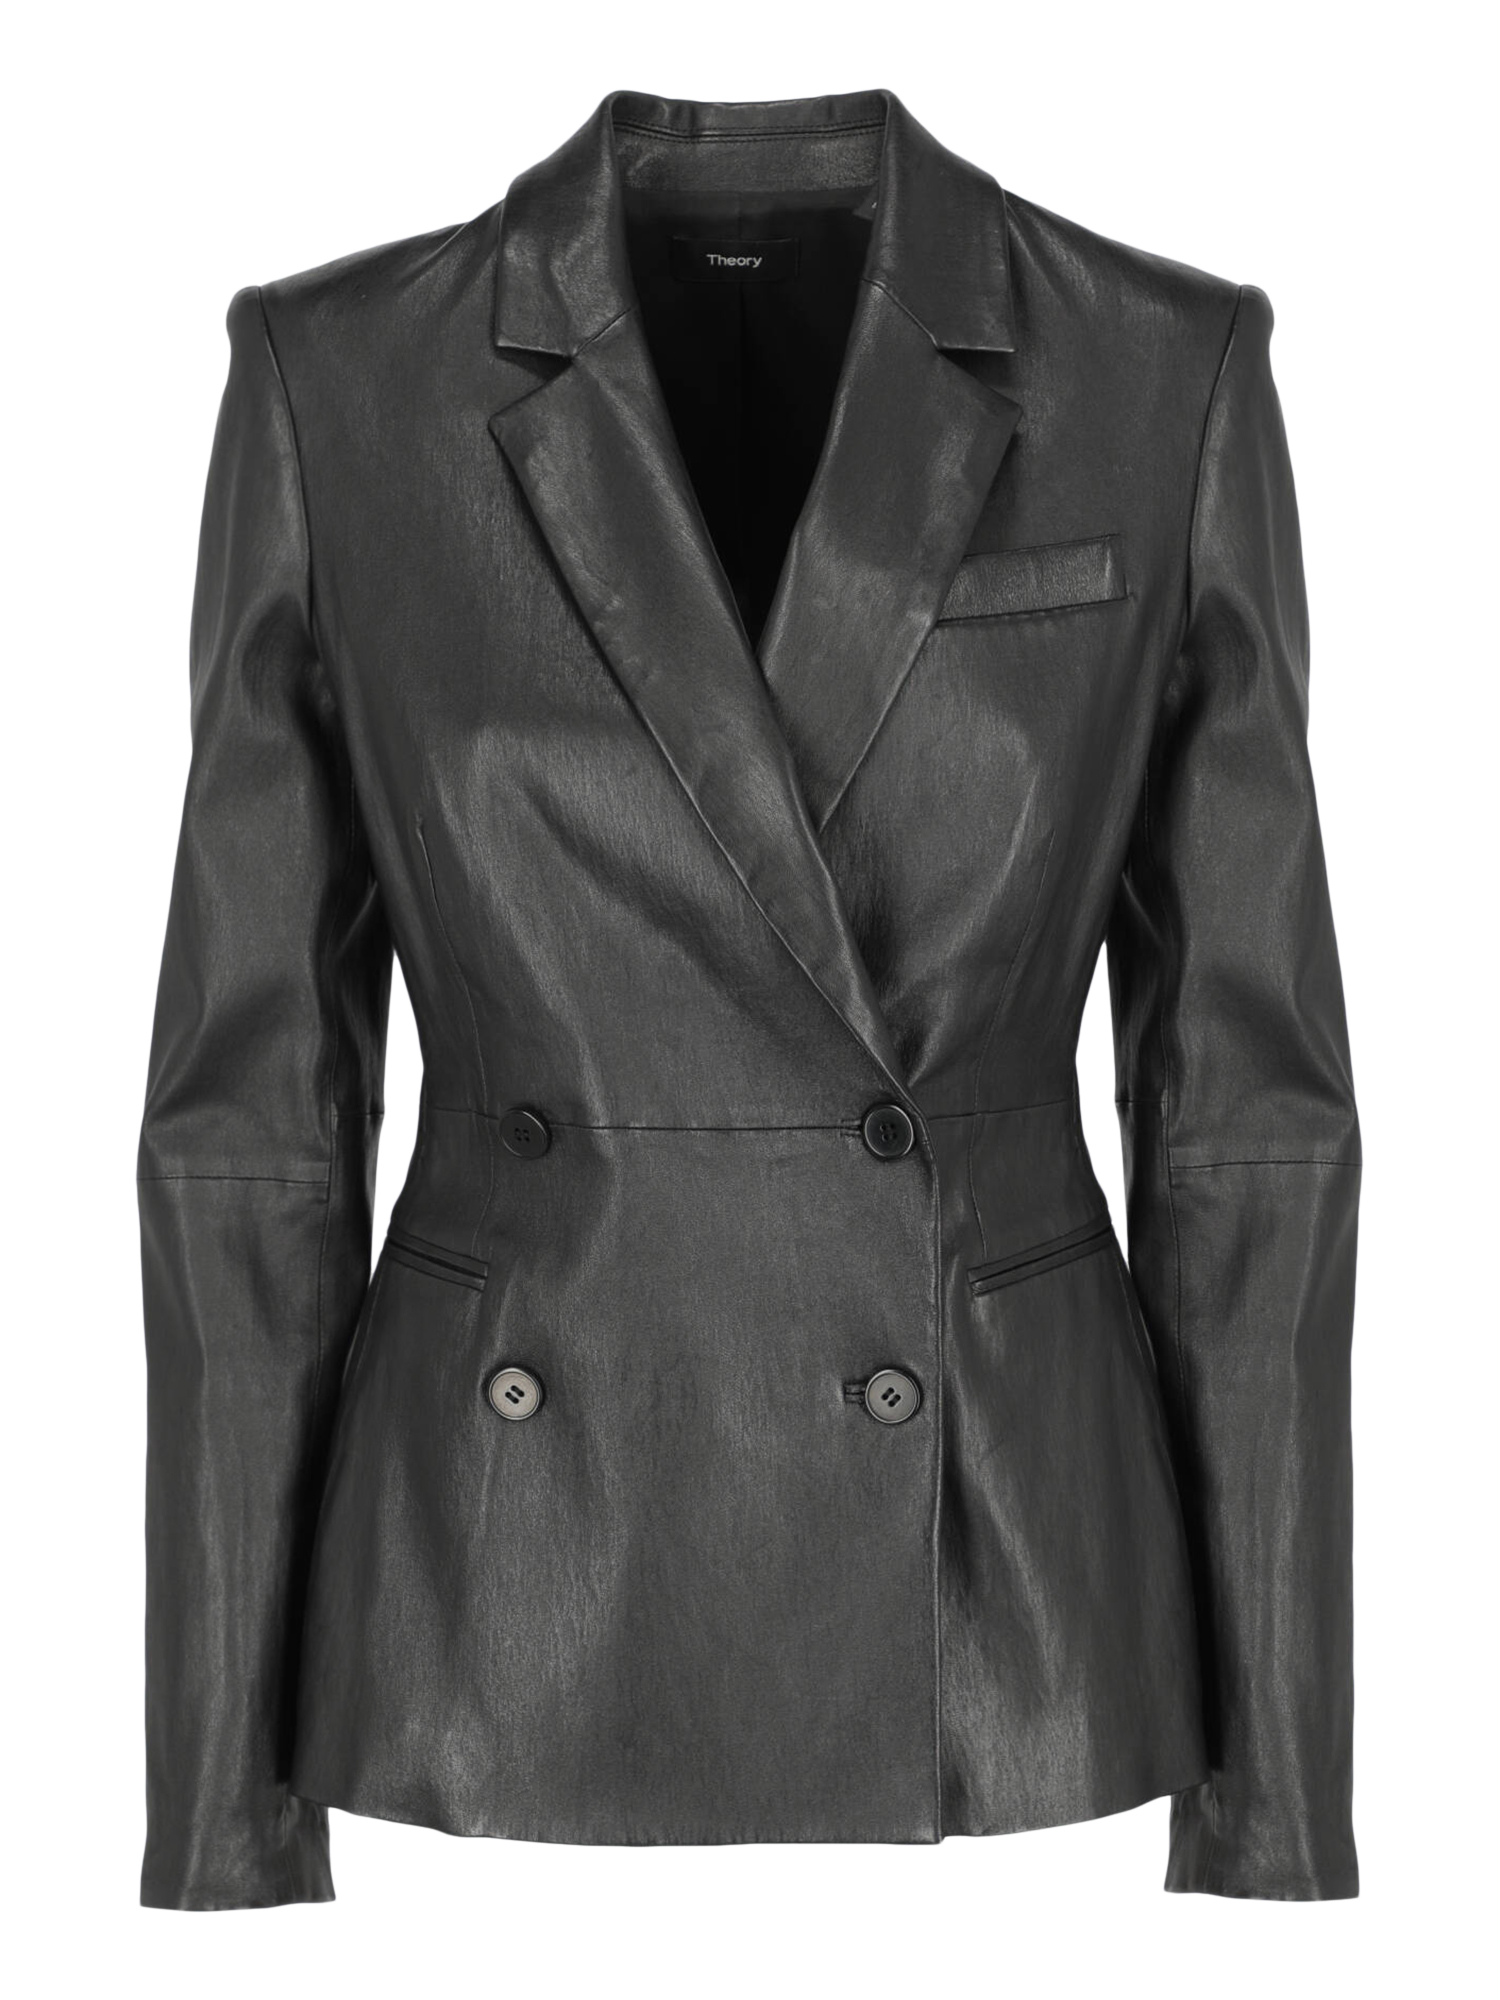 Vestes Pour Femme - Theory - En Leather Black - Taille:  -